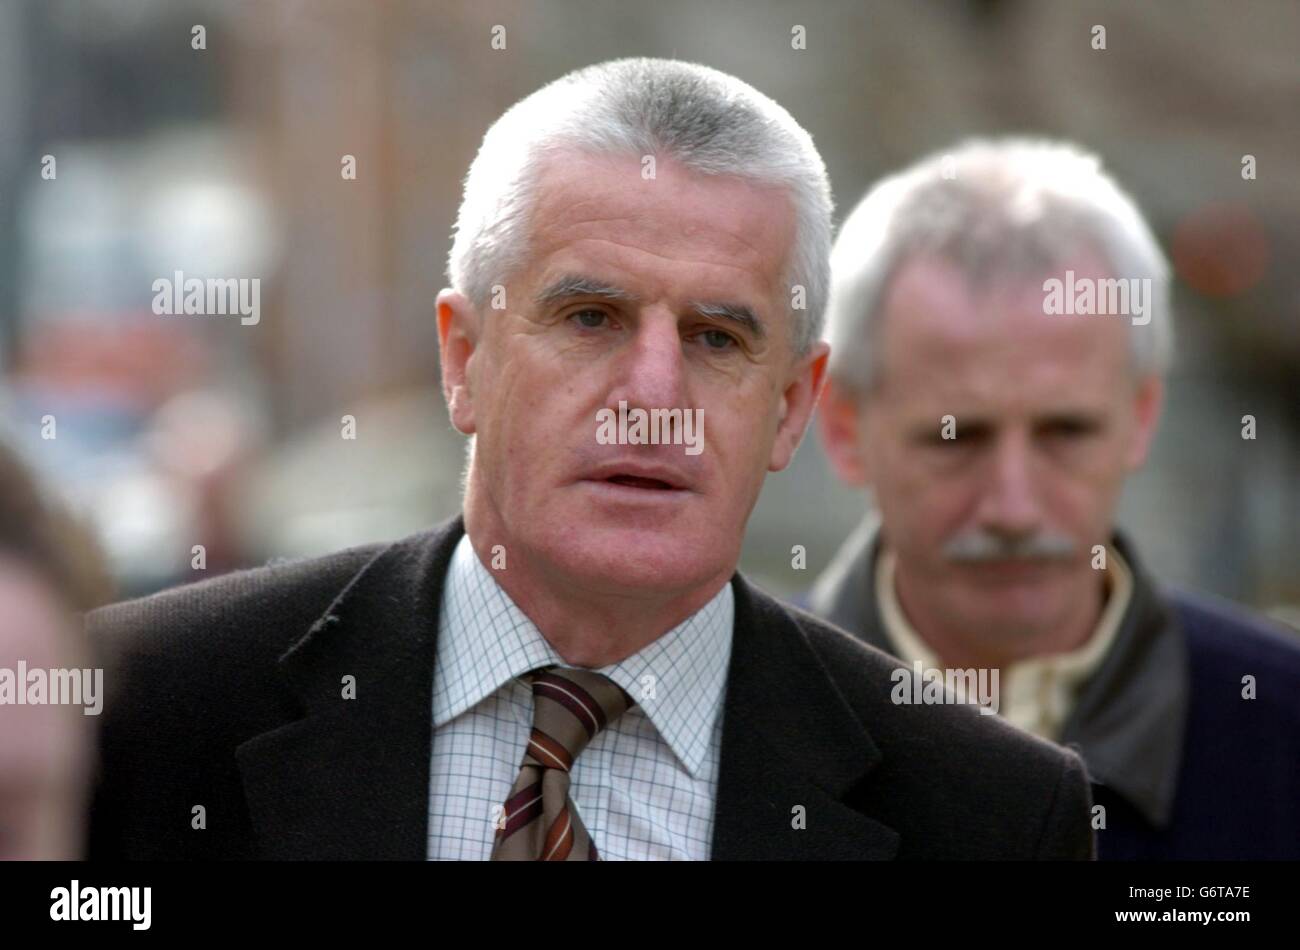 Denis Murphy, il padre dello studente di 18 anni, Brian Murphy - morto dopo essere stato calciato e picchiato a morte dopo una notte di studenti al Club Anabel nel Burlington Hotel, Dublino, il 31 agosto 2000 - arrivato al Tribunale penale centrale di Dublino, Dublino, Irlanda, lunedì 15 marzo 2004. Dermot Laide, 22 anni, è stato condannato a quattro anni per la macellazione e altri due anni per i disordini violenti, per correre contemporaneamente. Il co-accusato Sean Mackey, 23 anni, è stato incarcerato per due anni e Desmond Ryan, 23, per nove mesi, entrambi per disordine violento. Foto Stock